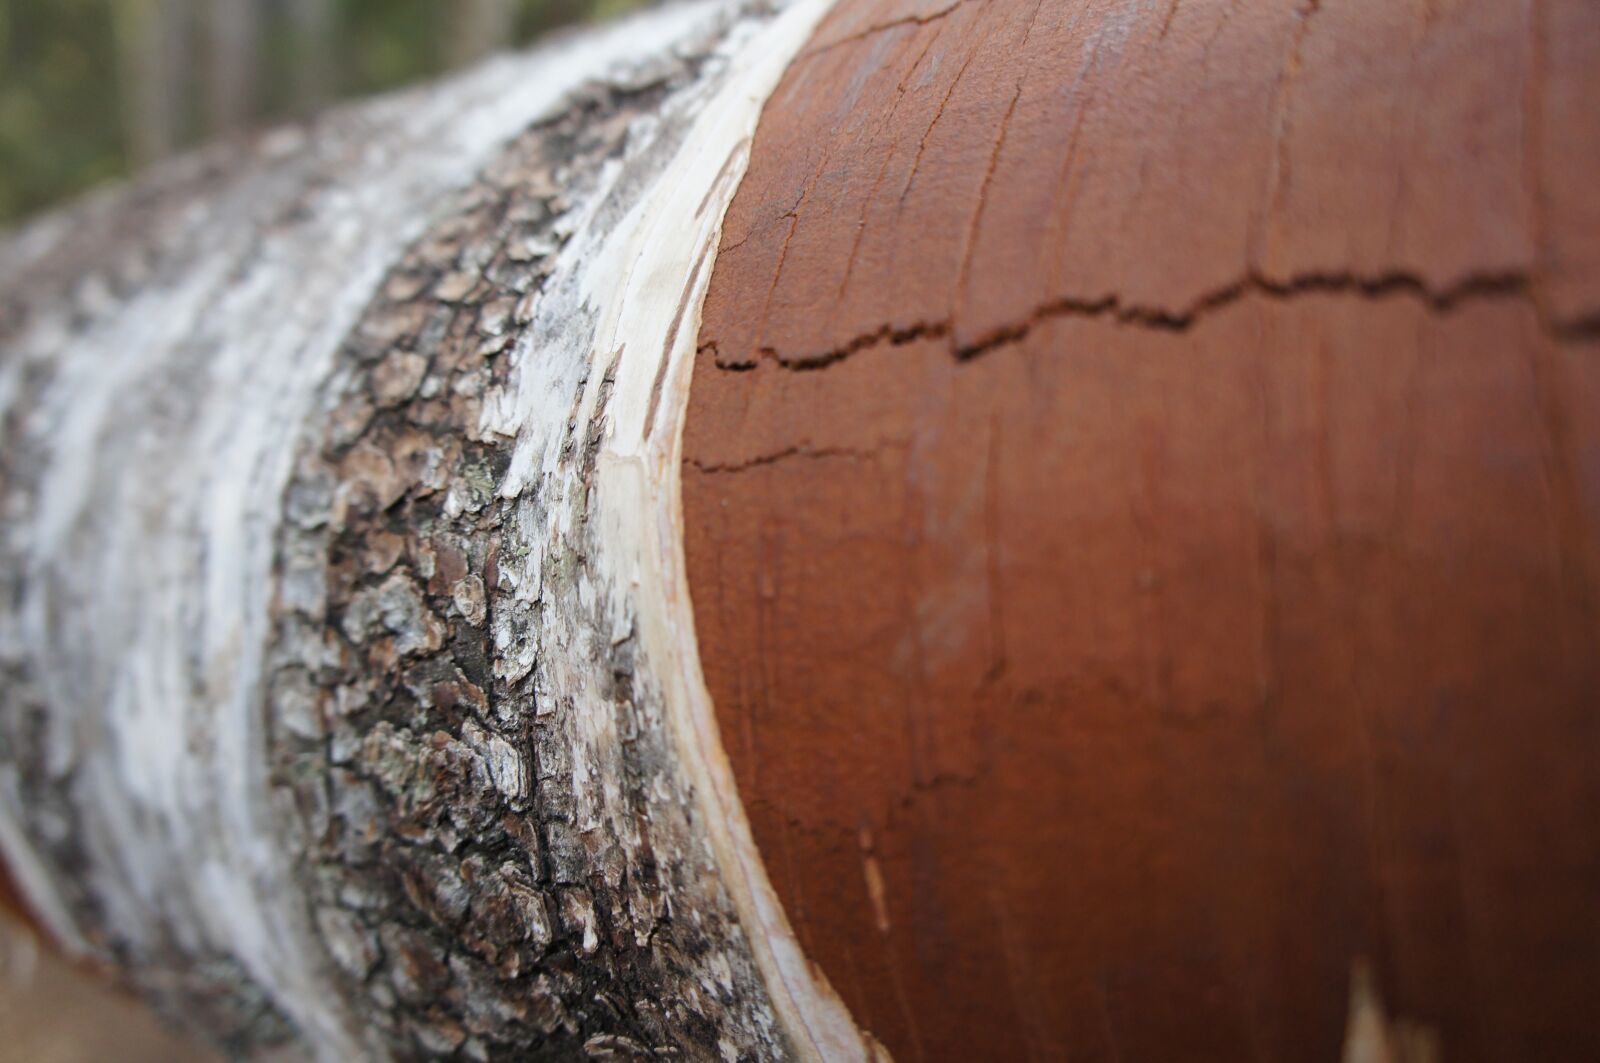 Sony Alpha NEX-C3 sample photo. Tree, bark, nature photography